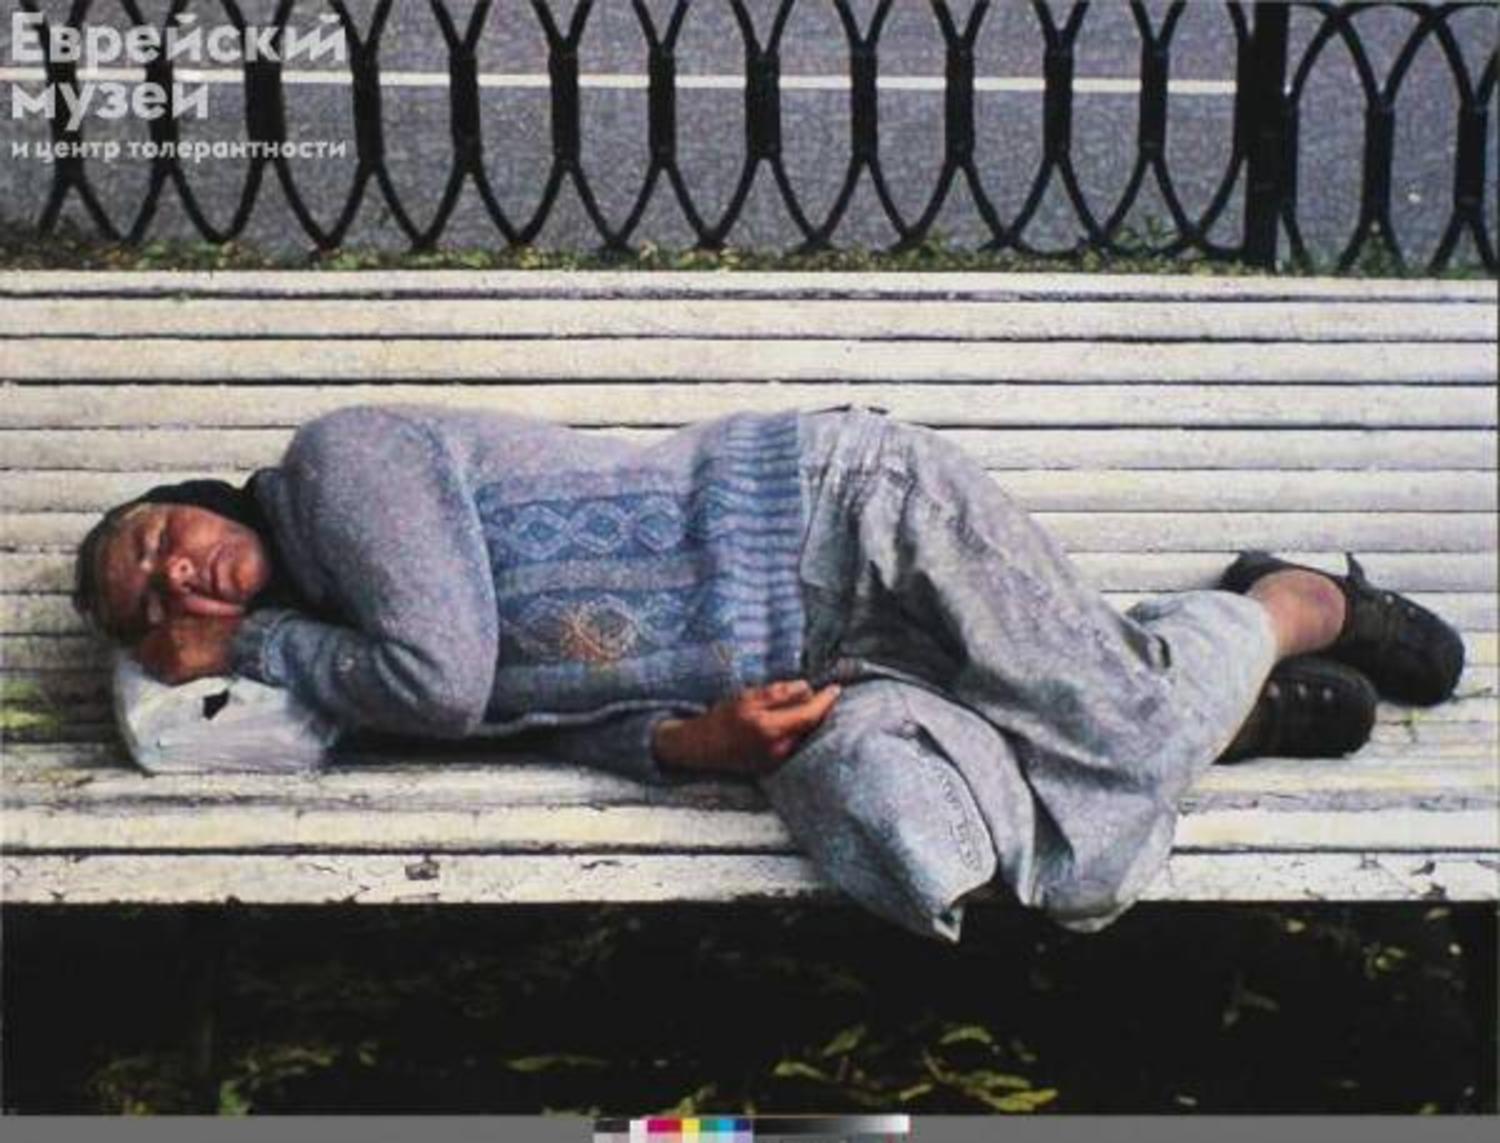 Спящая в голубой кофте из цикла «Разгуляй», 2009